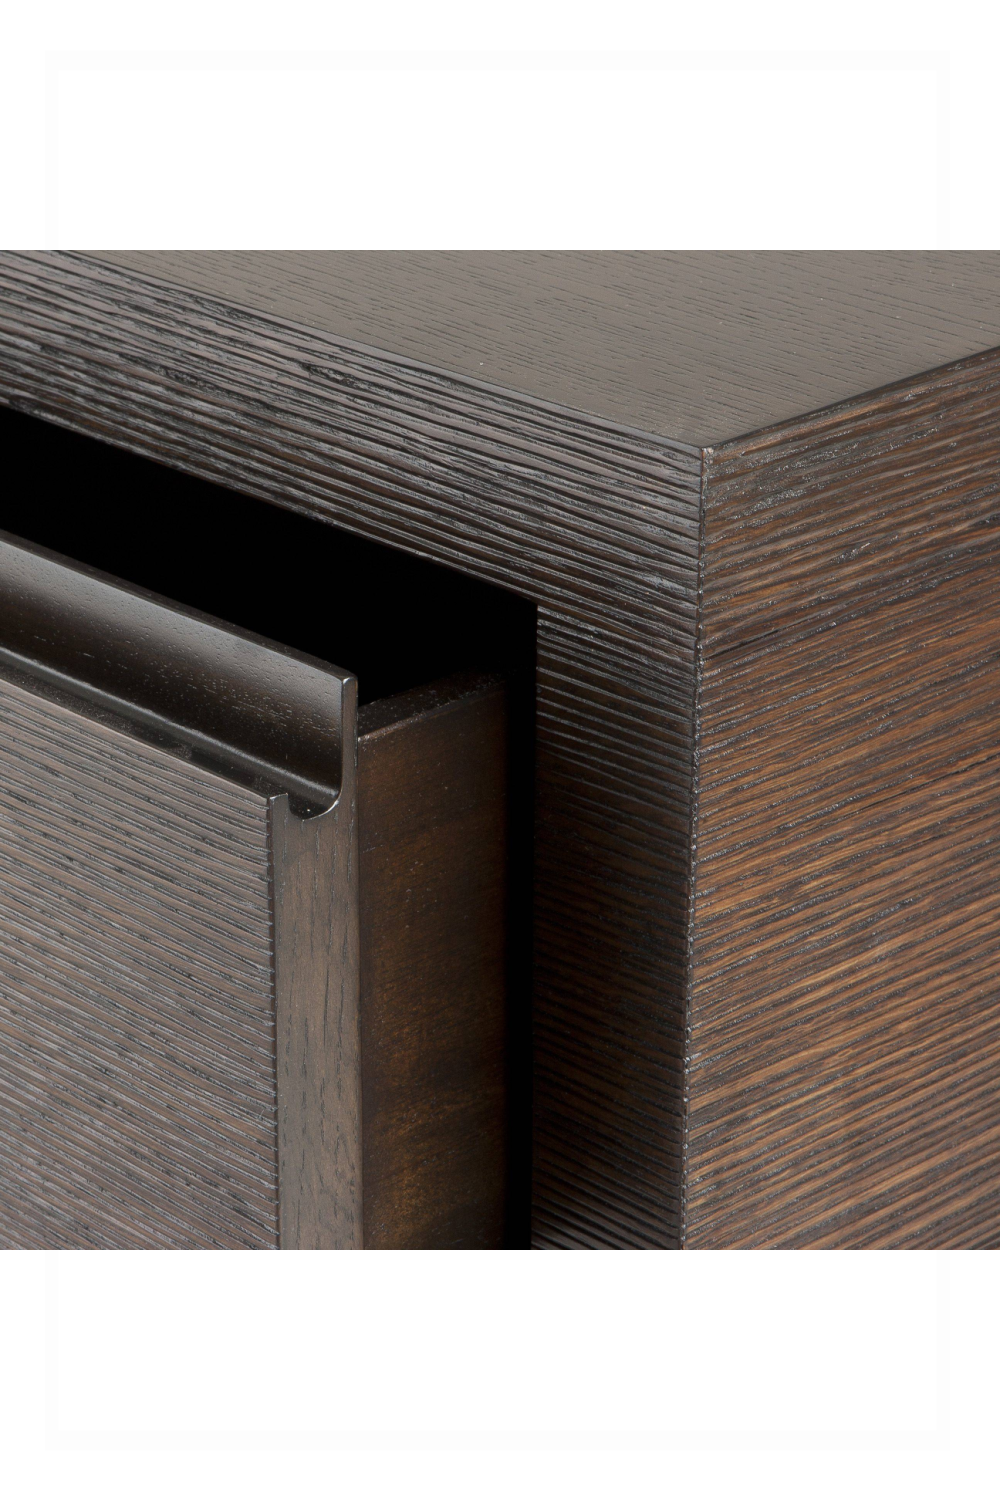 Wood Storage Cabinet | Eichholtz Crespi | #1 Eichholtz Online Retailer